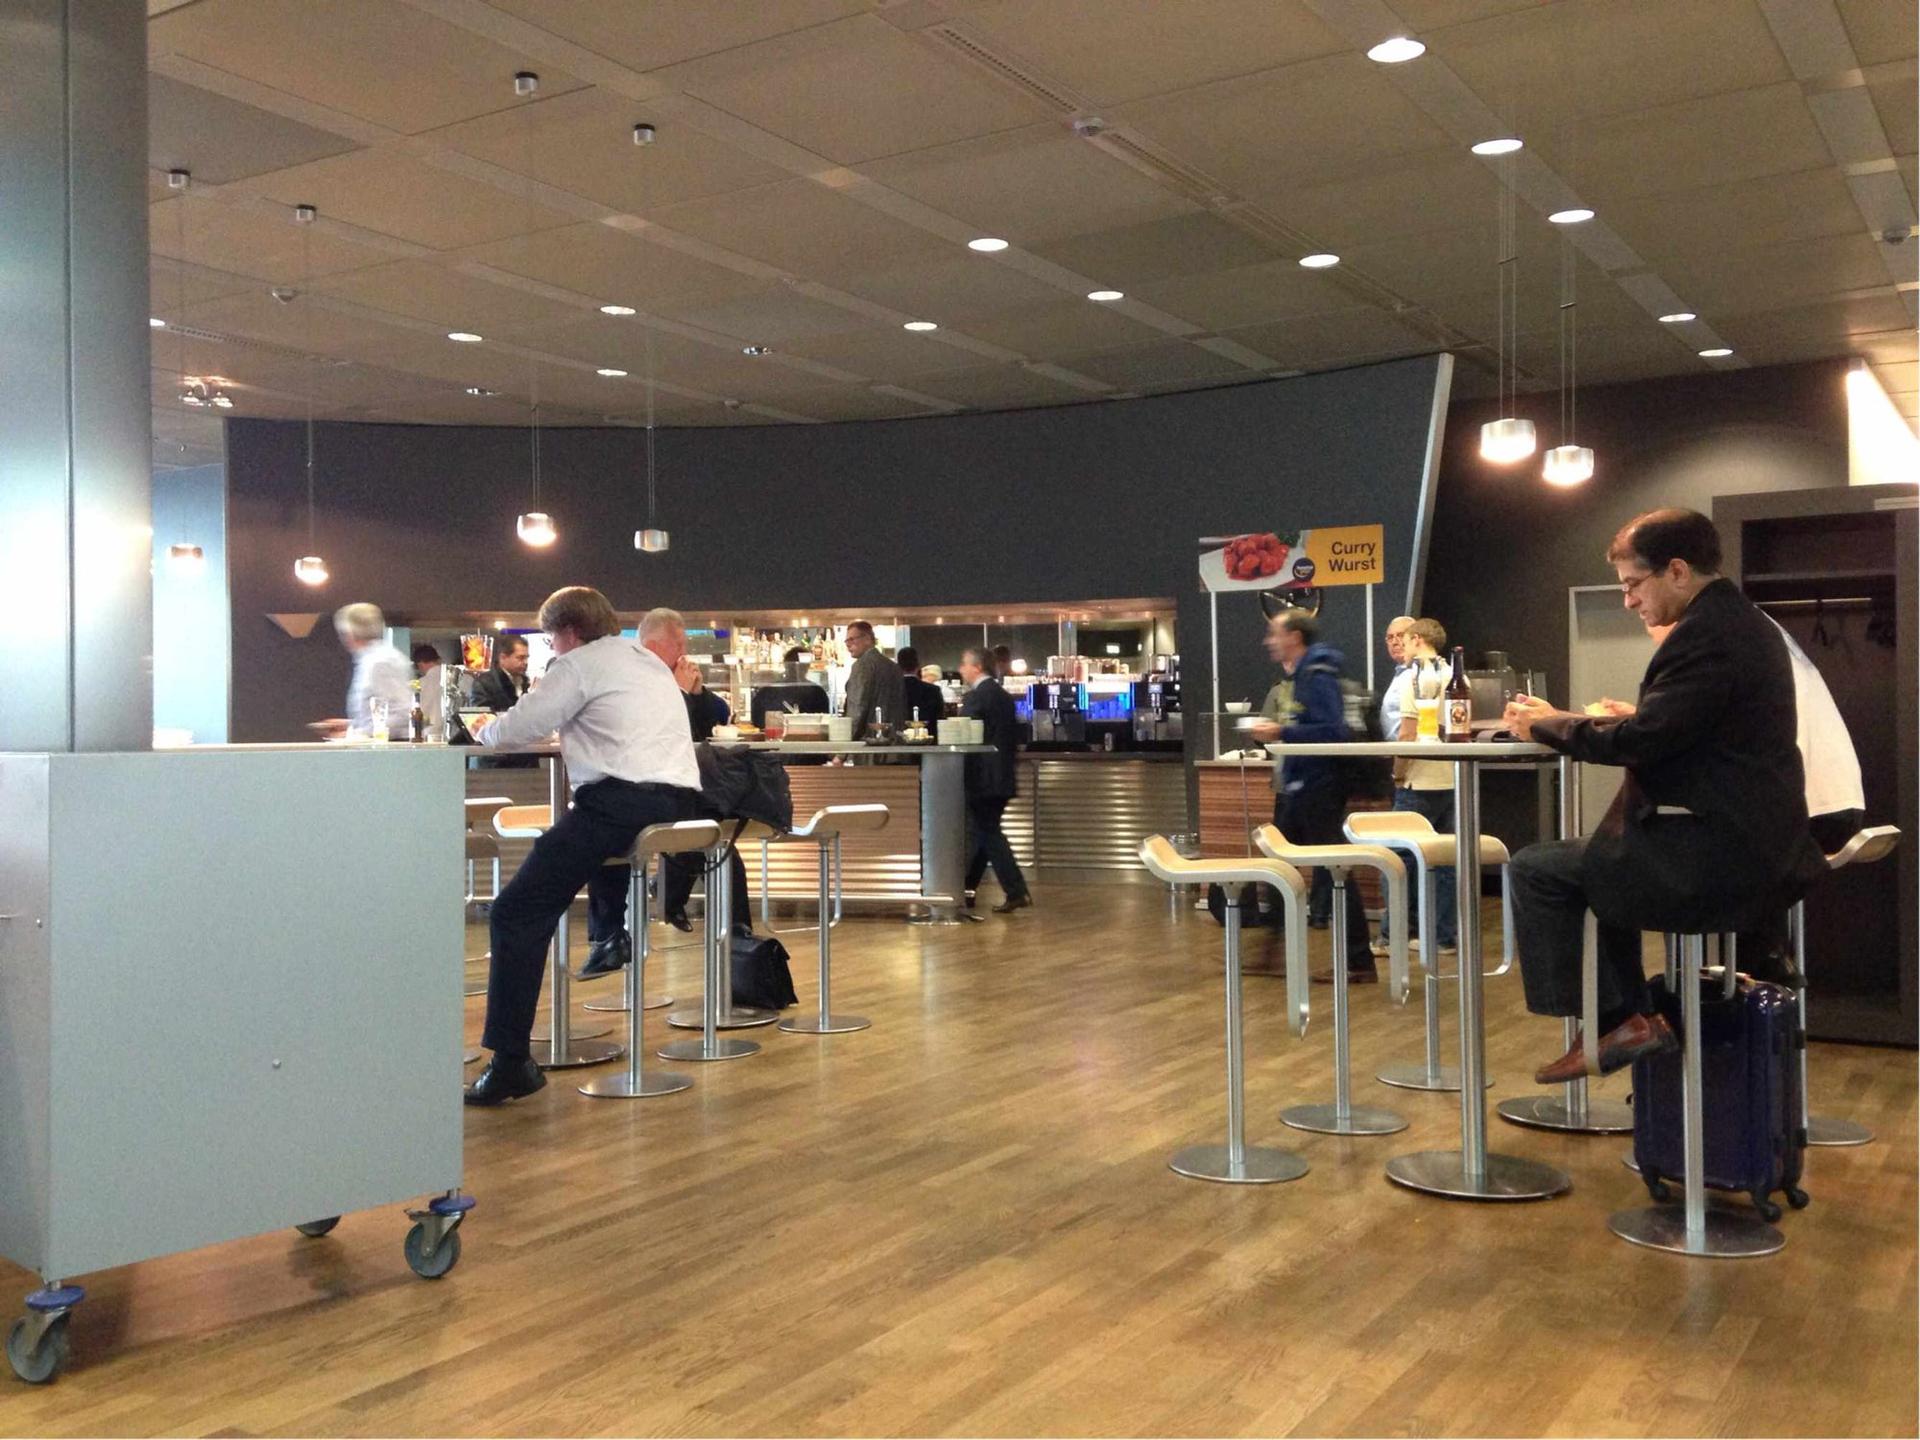 Lufthansa Business Lounge (Non-Schengen) image 1 of 3